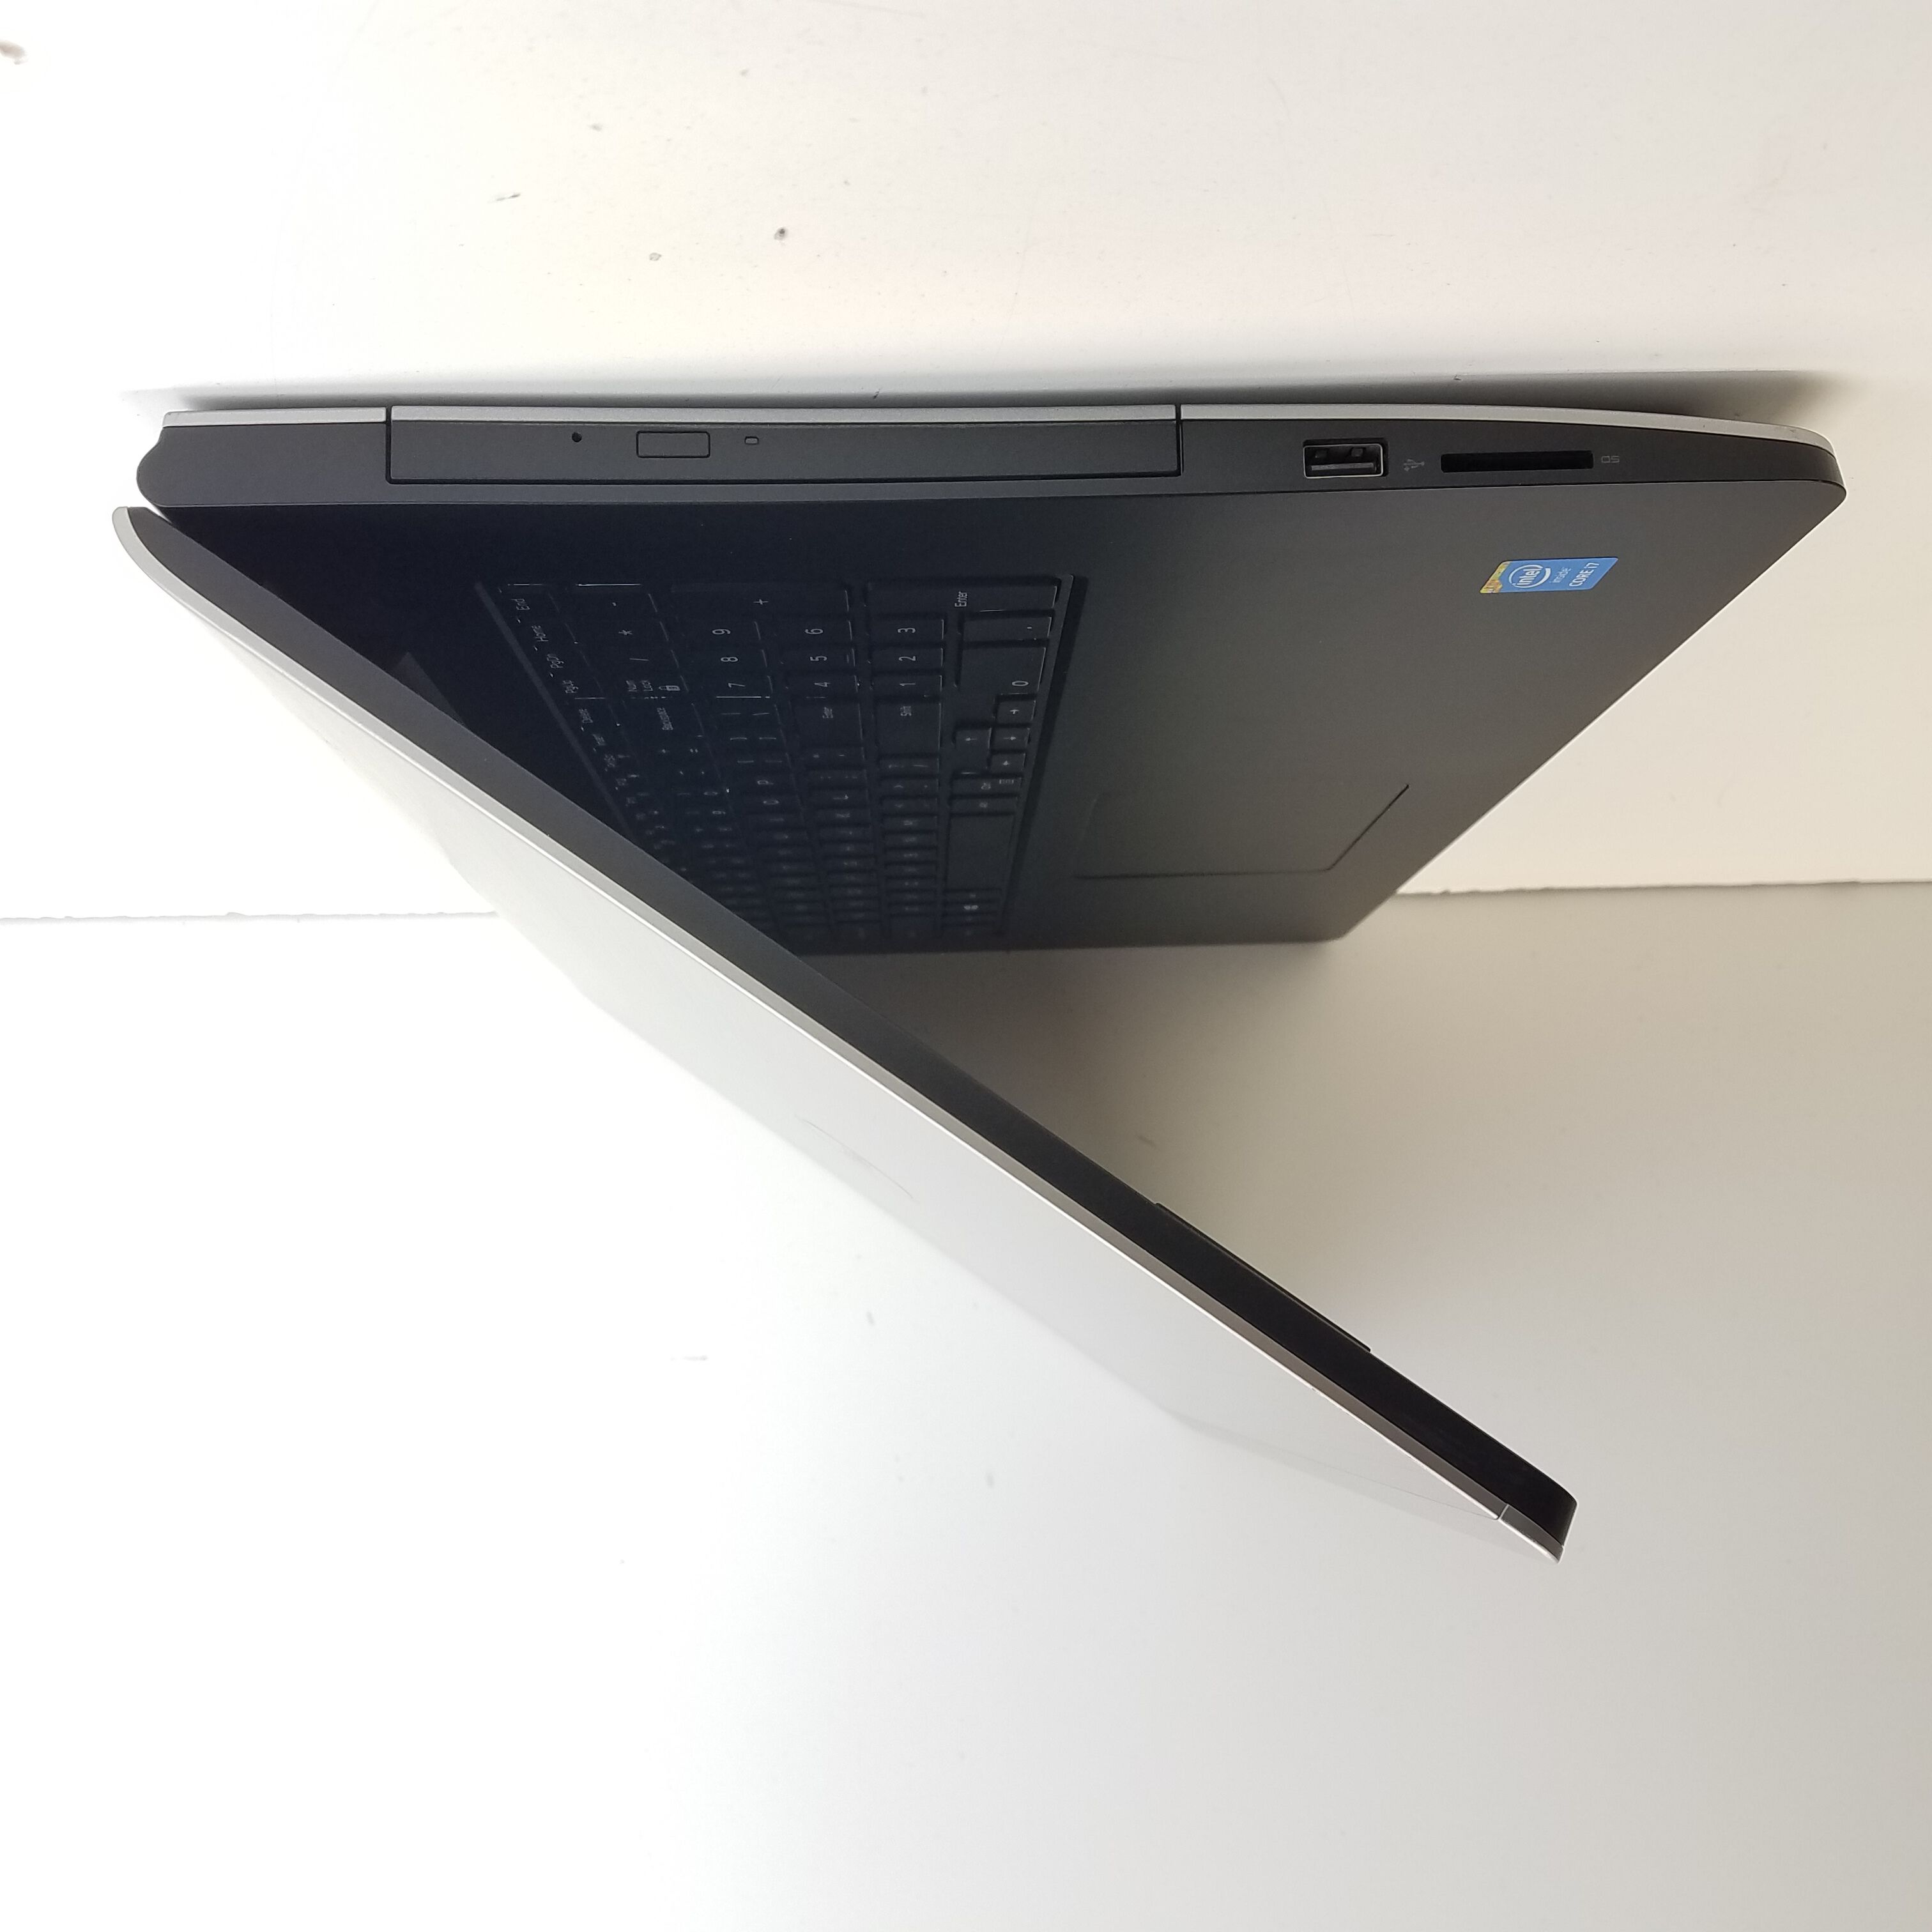 Dell Inspiron 17 5748 (P26E) 17 in PC Laptop